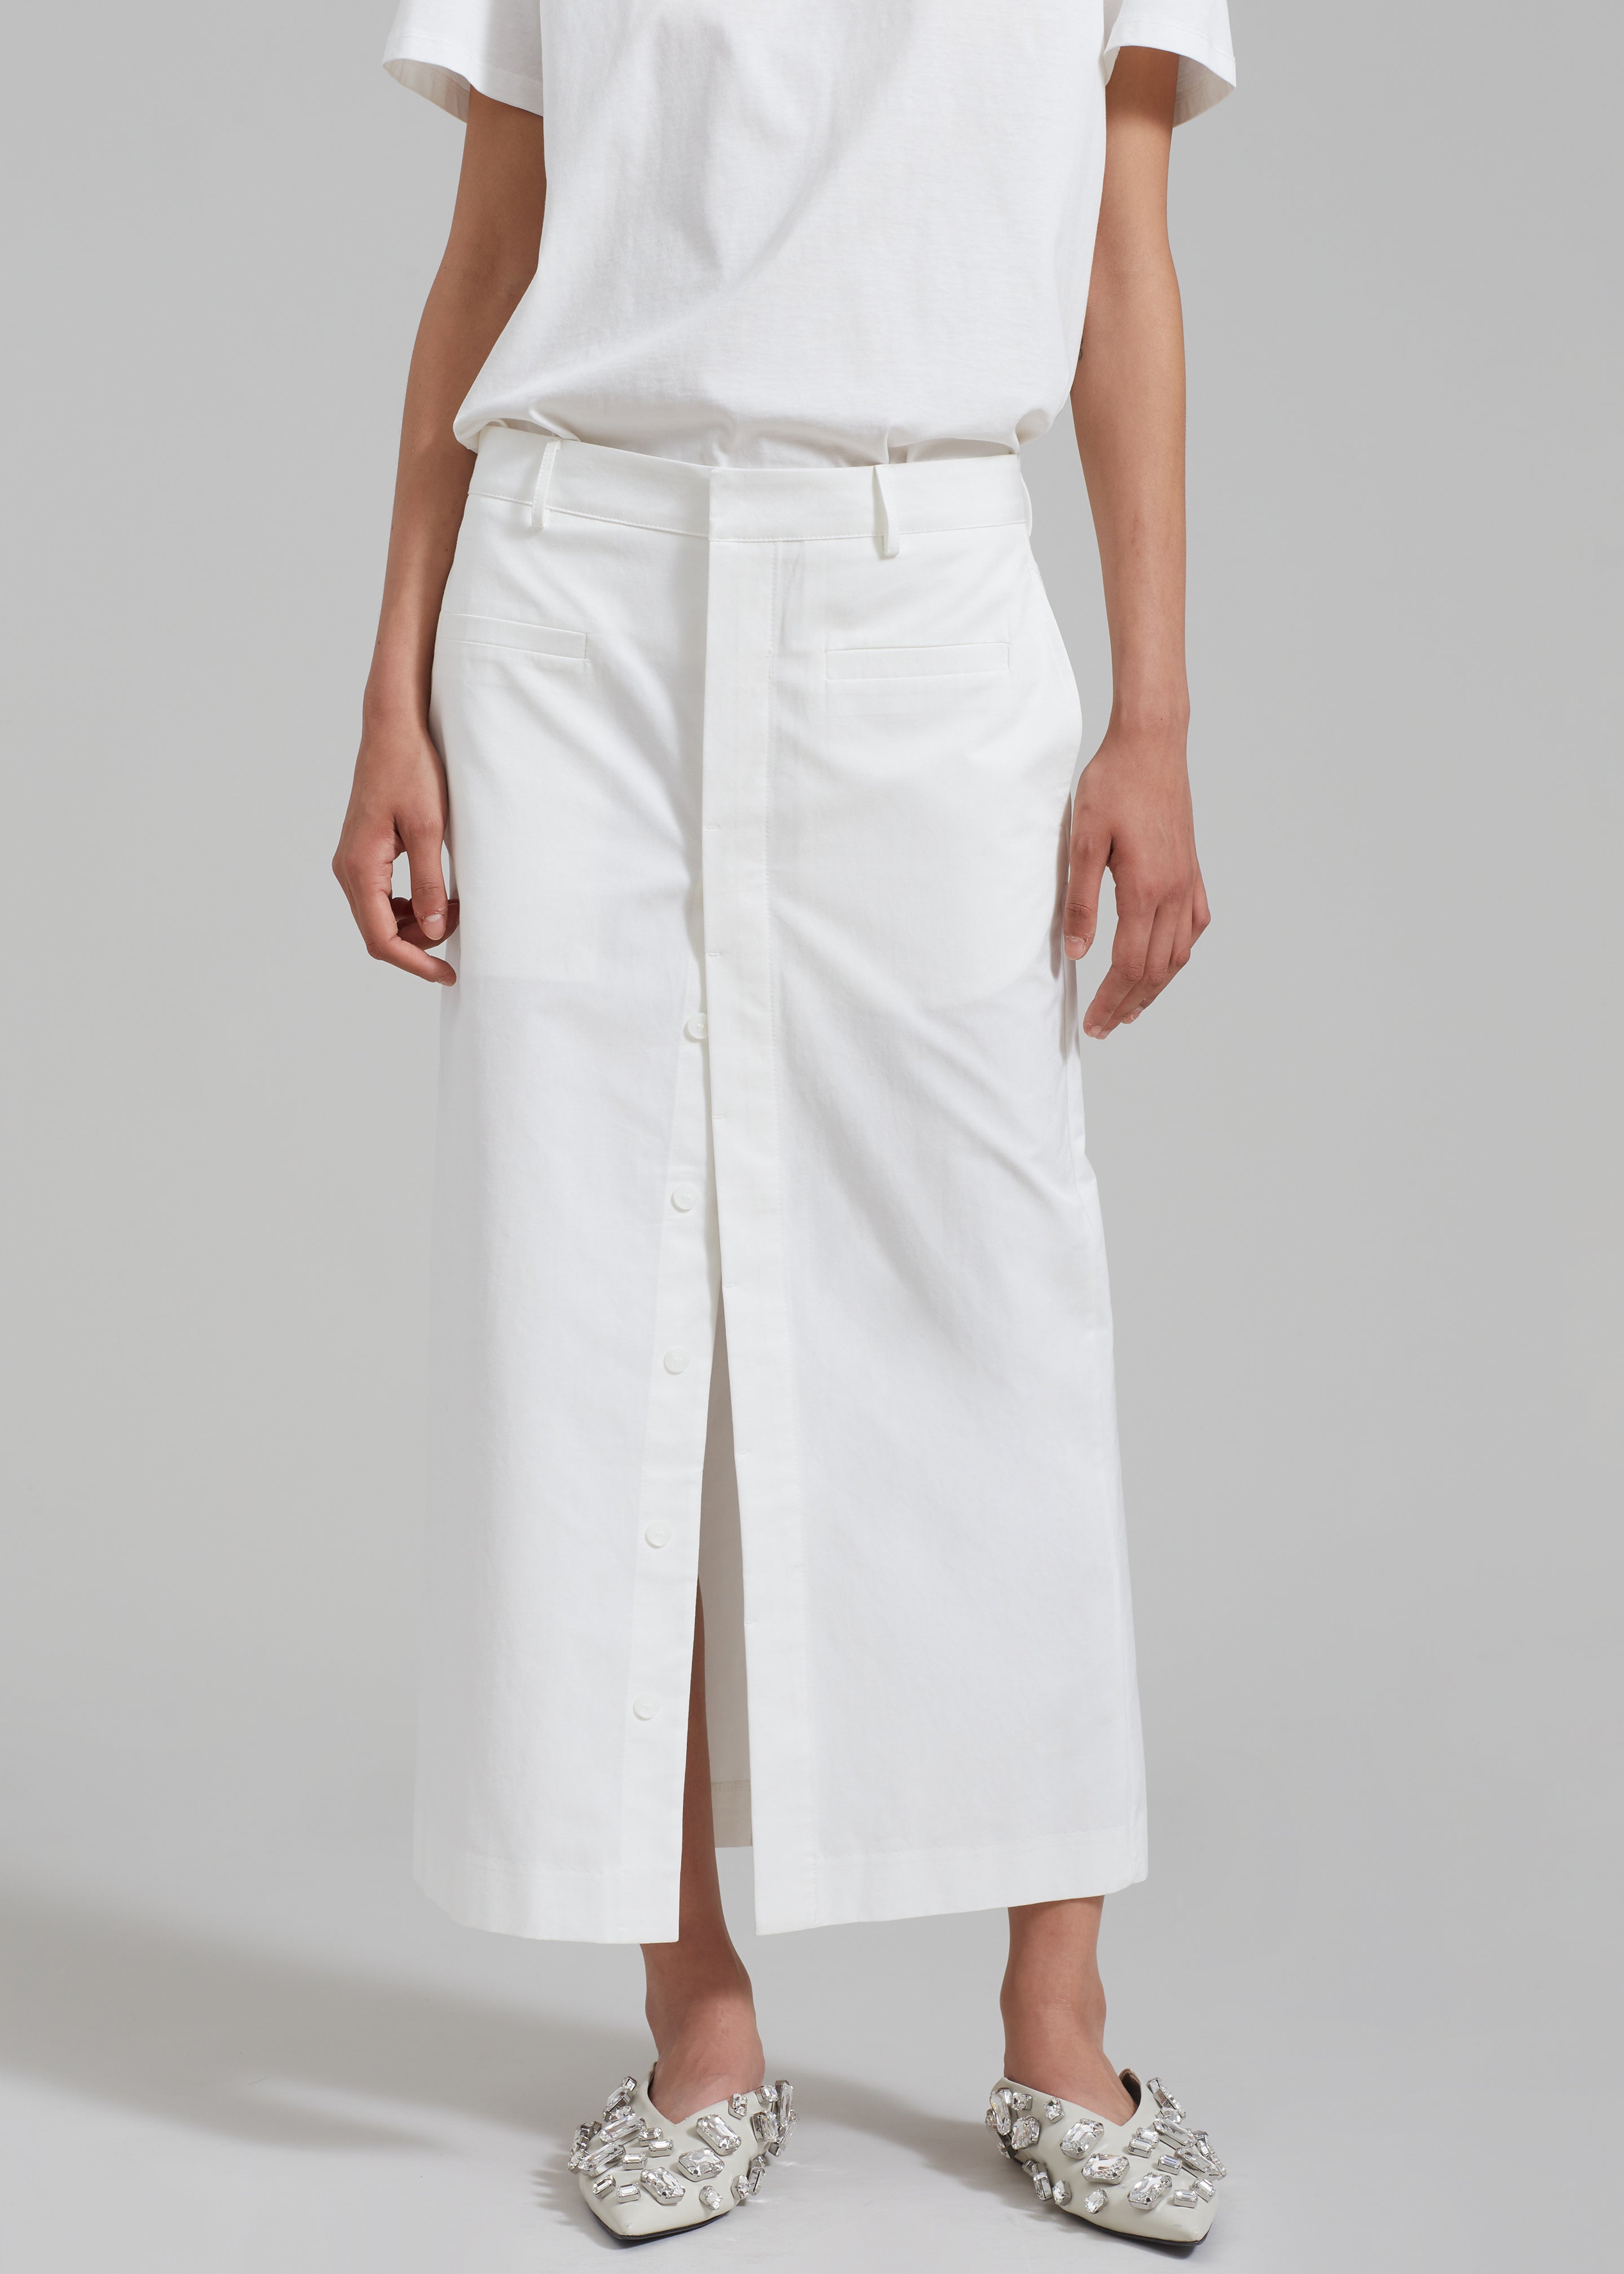 Norah Slit Midi Skirt - White - 3